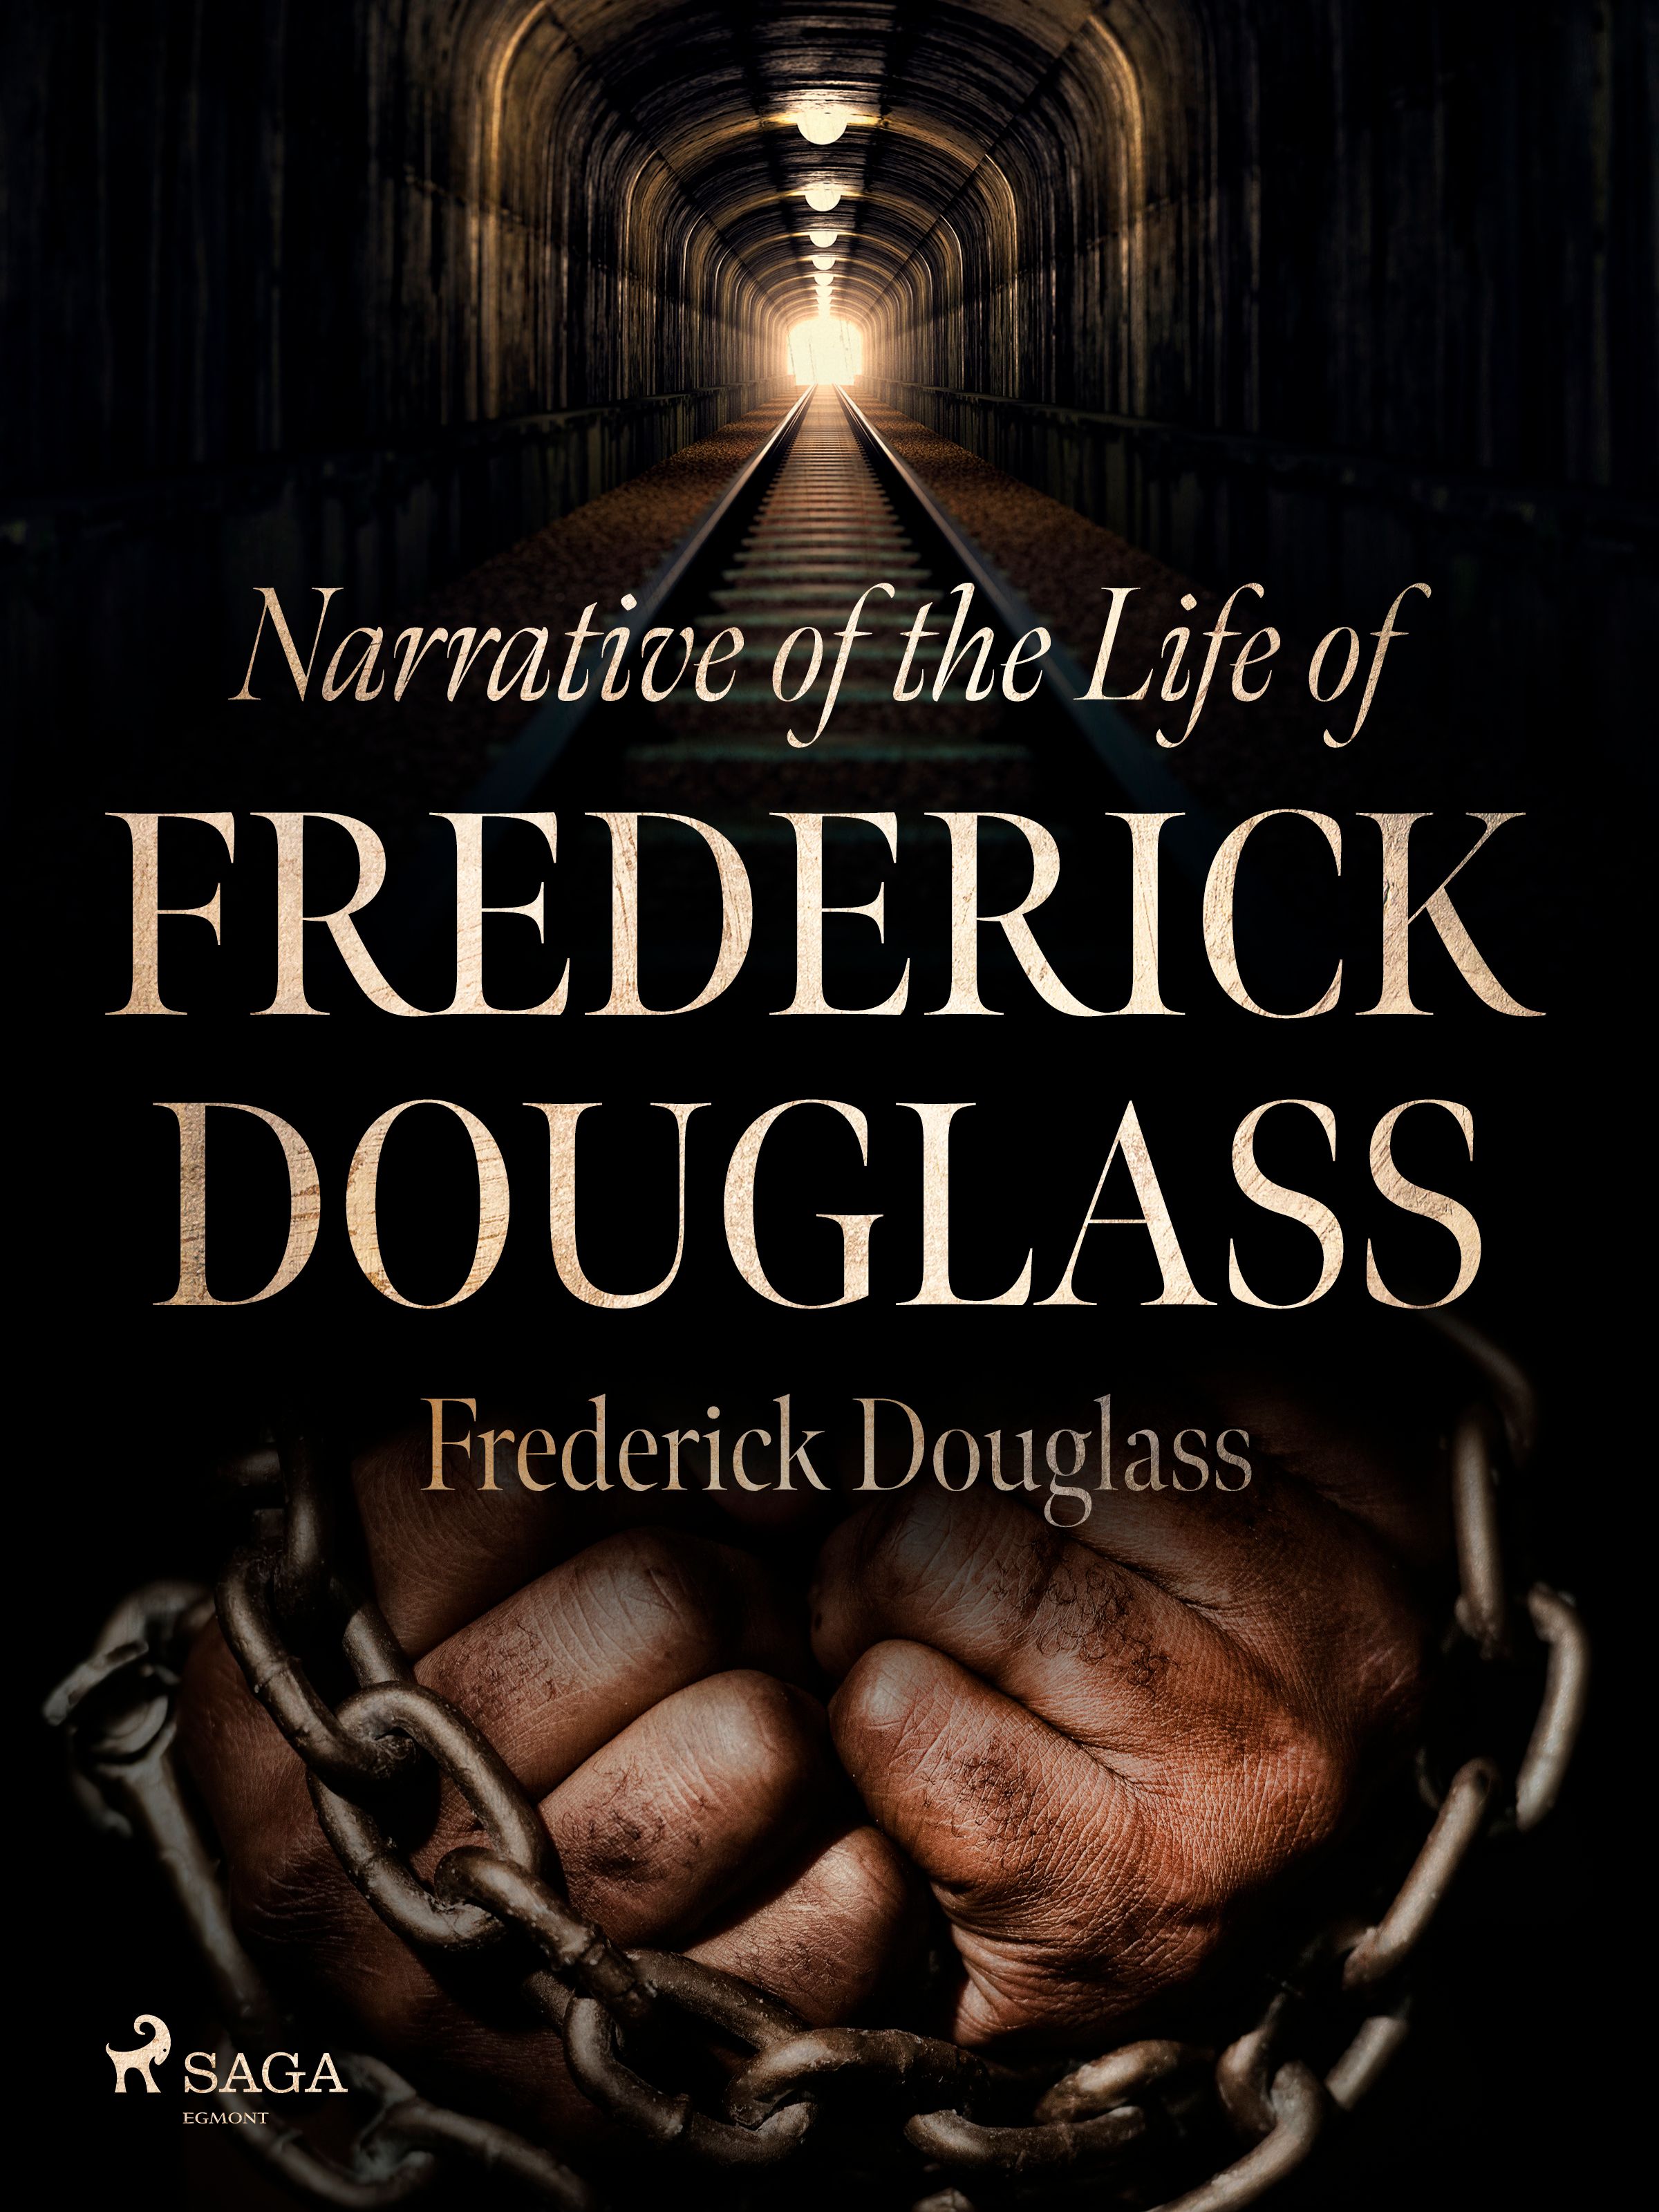 Narrative of the Life of Frederick Douglass, e-bog af Frederick Douglass